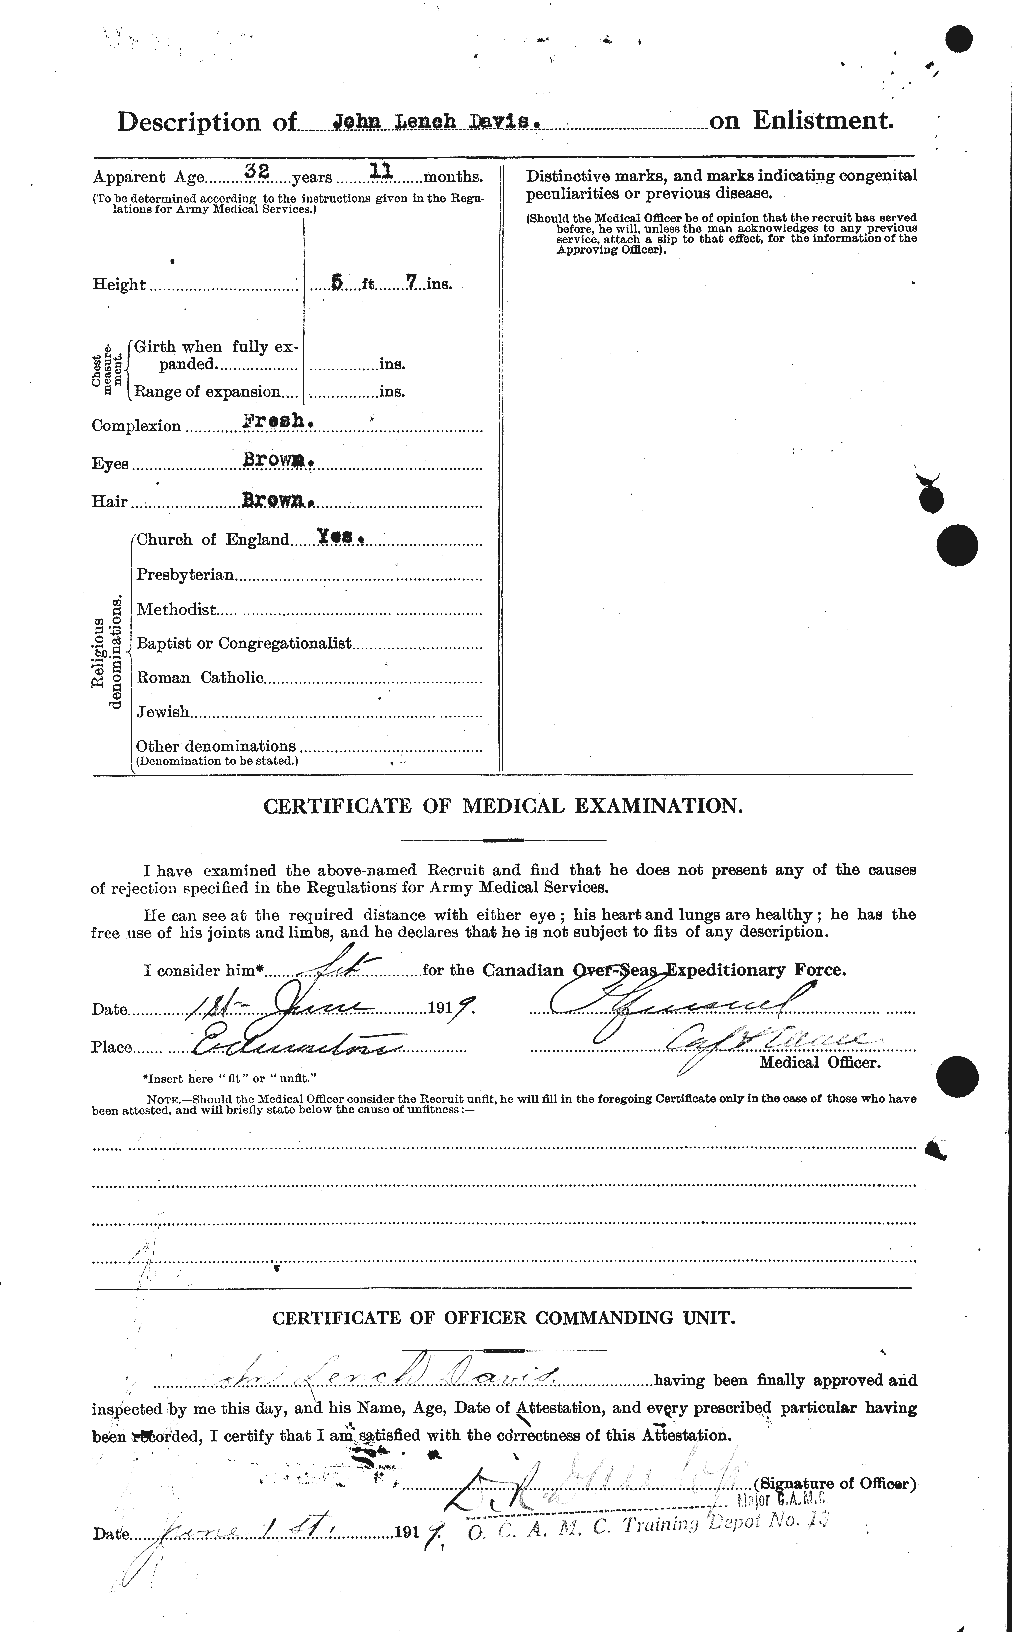 Dossiers du Personnel de la Première Guerre mondiale - CEC 284090b